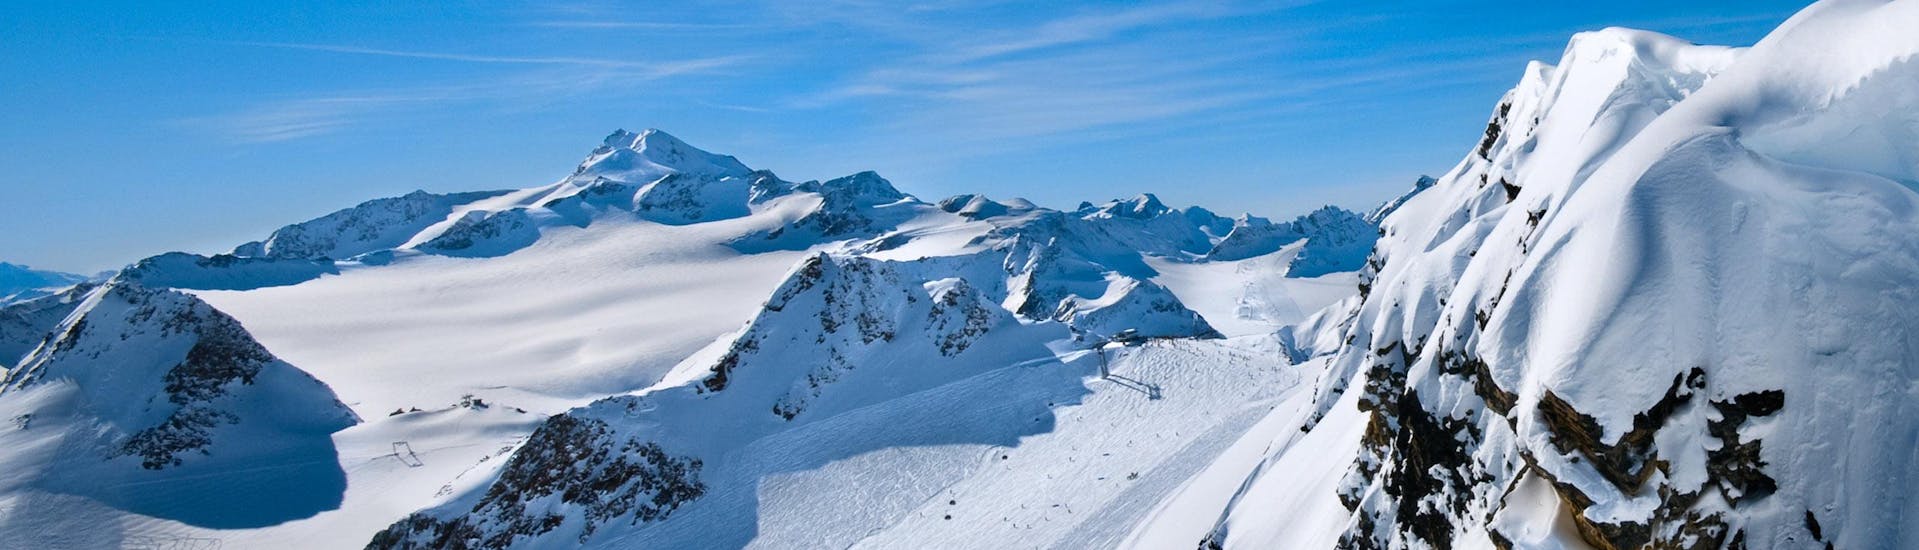 Ausblick auf die sonnige Berglandschaft beim Skifahren lernen mit einer Skischule im Skigebiet Saltria.